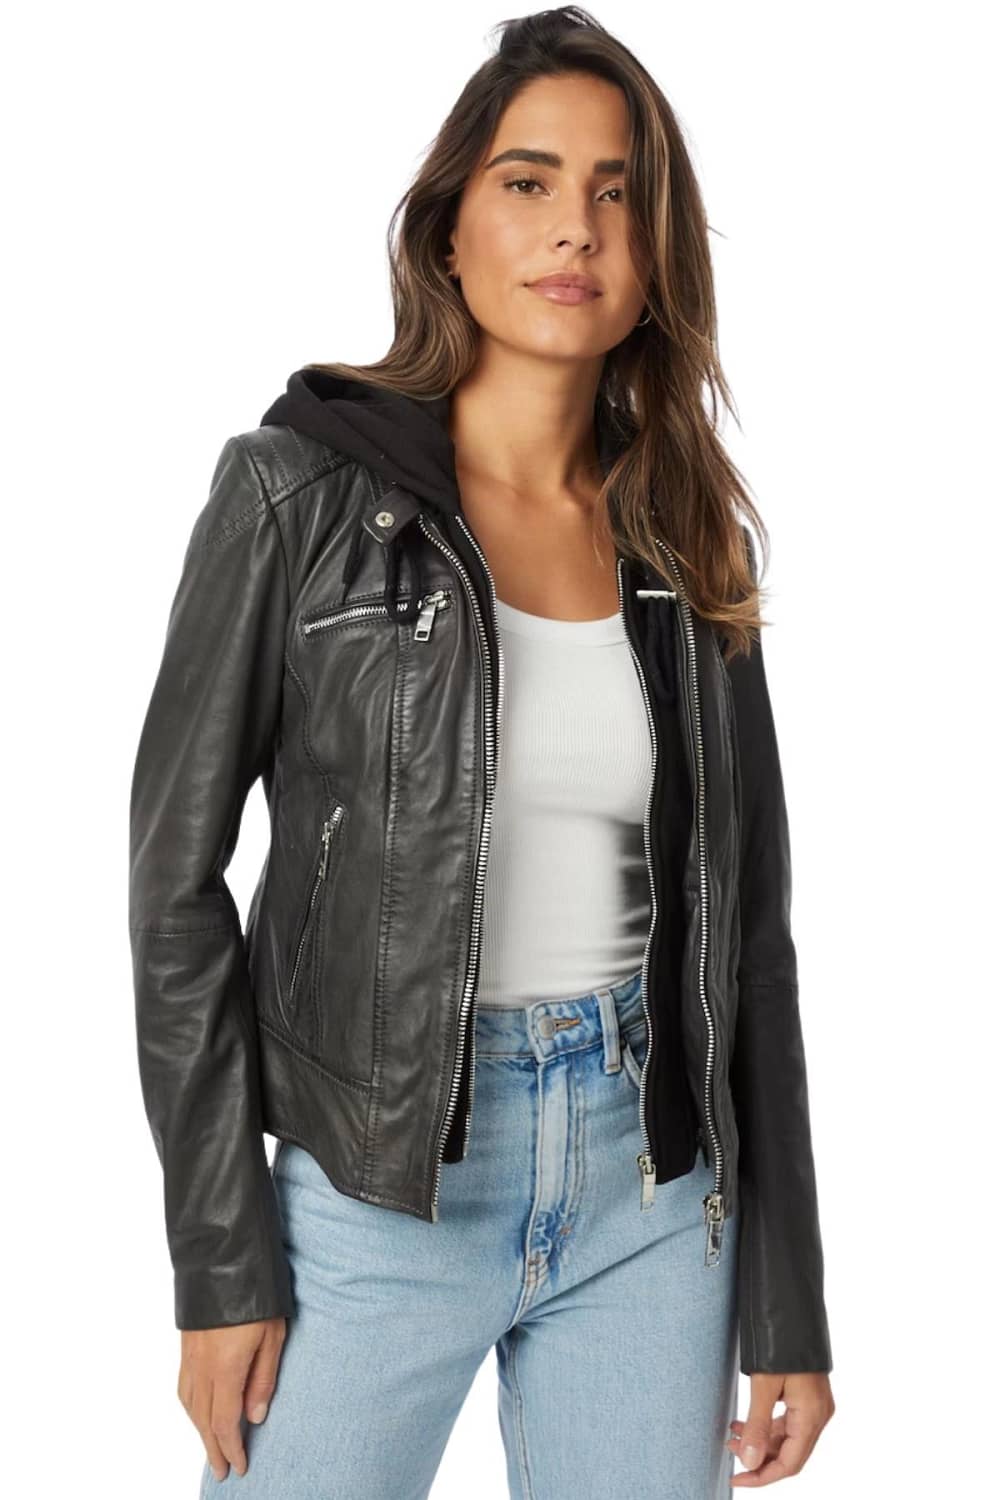 Hoodie Leather Jacket Womens